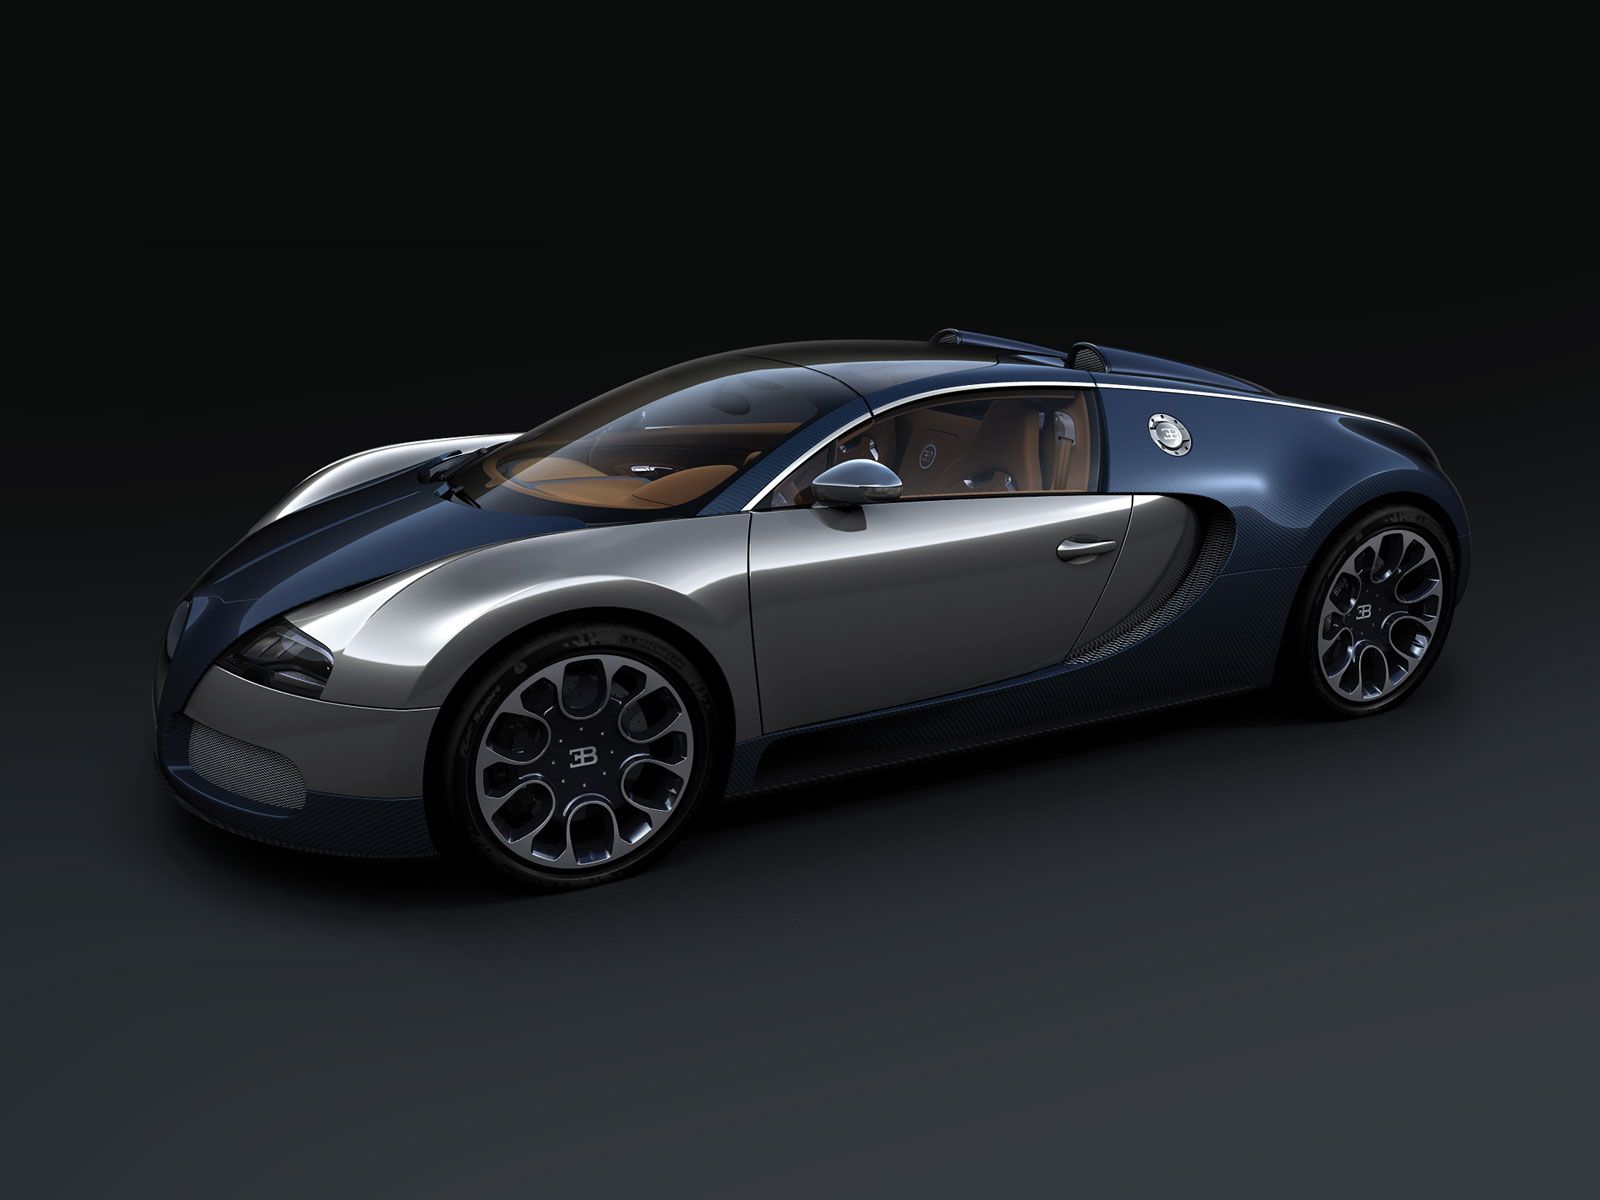 2010 Bugatti Veyron Grand Sport Sang Bleu